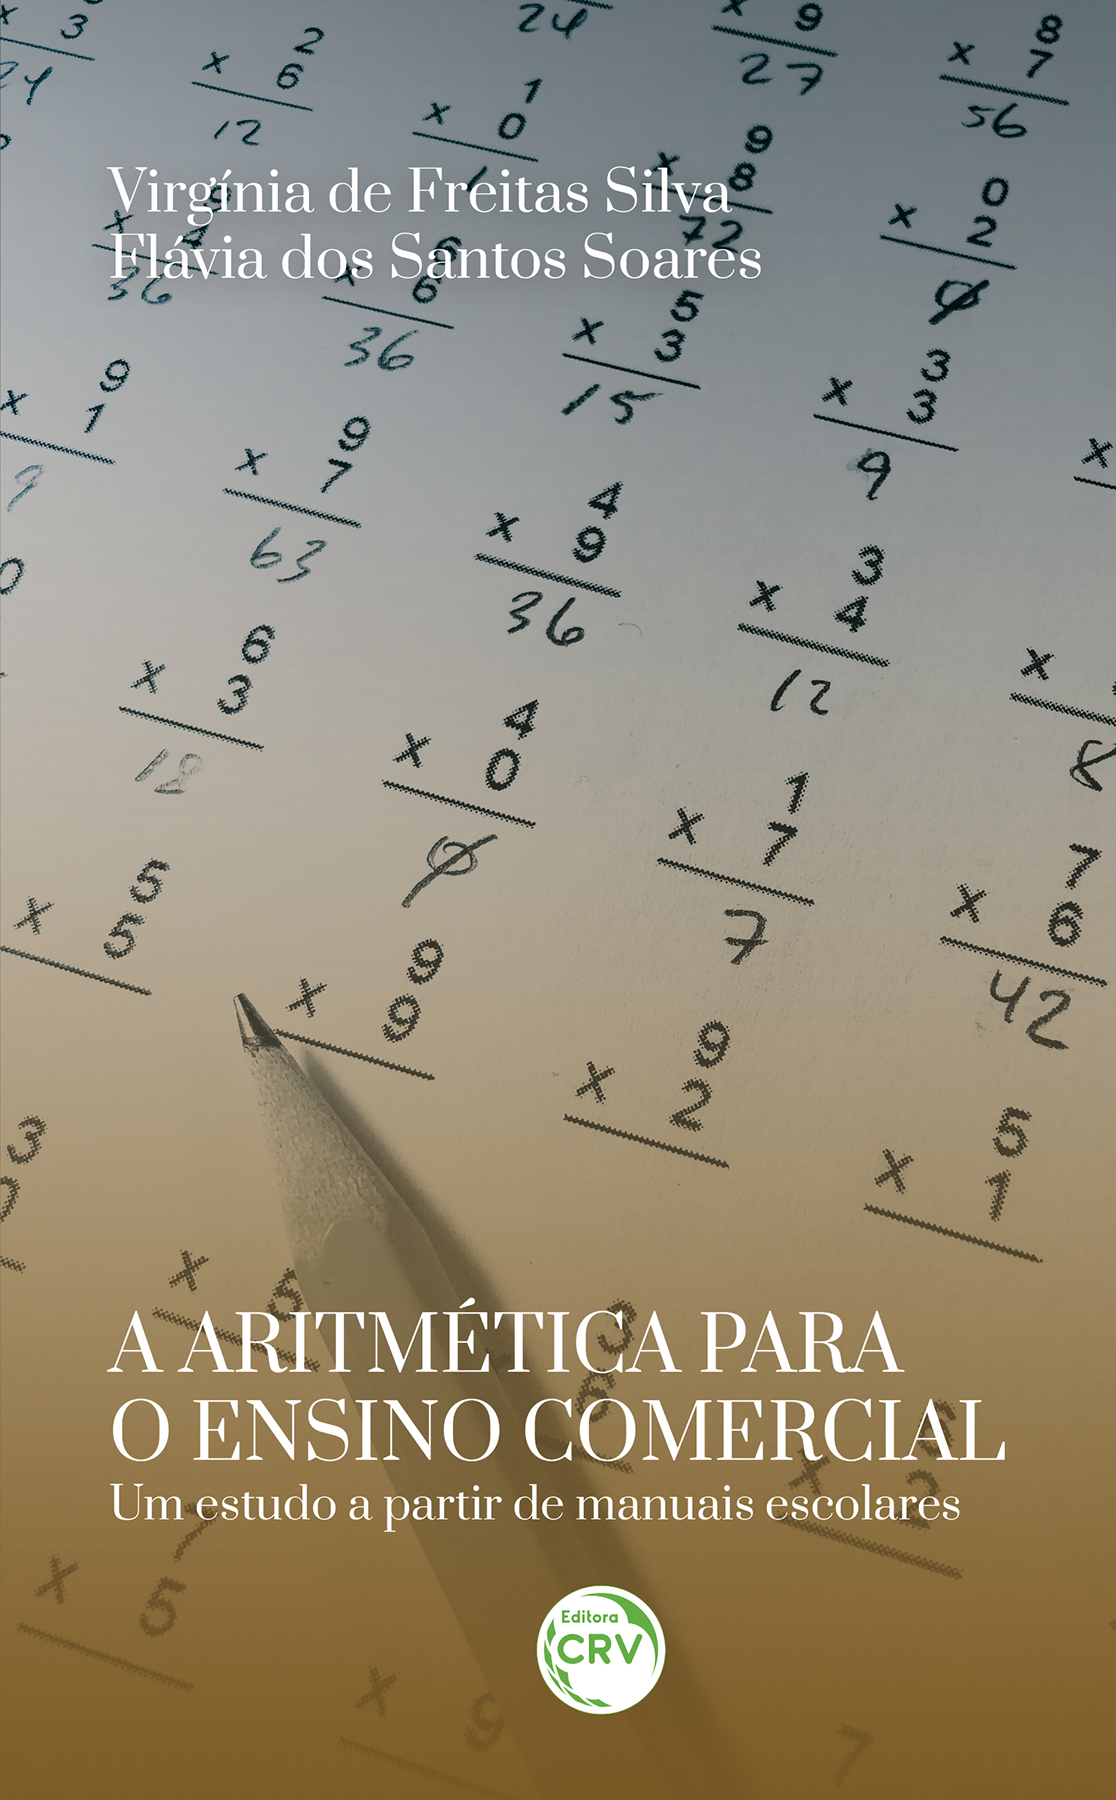 Capa do livro: A ARITMÉTICA PARA O ENSINO COMERCIAL<br>um estudo a partir de manuais escolares